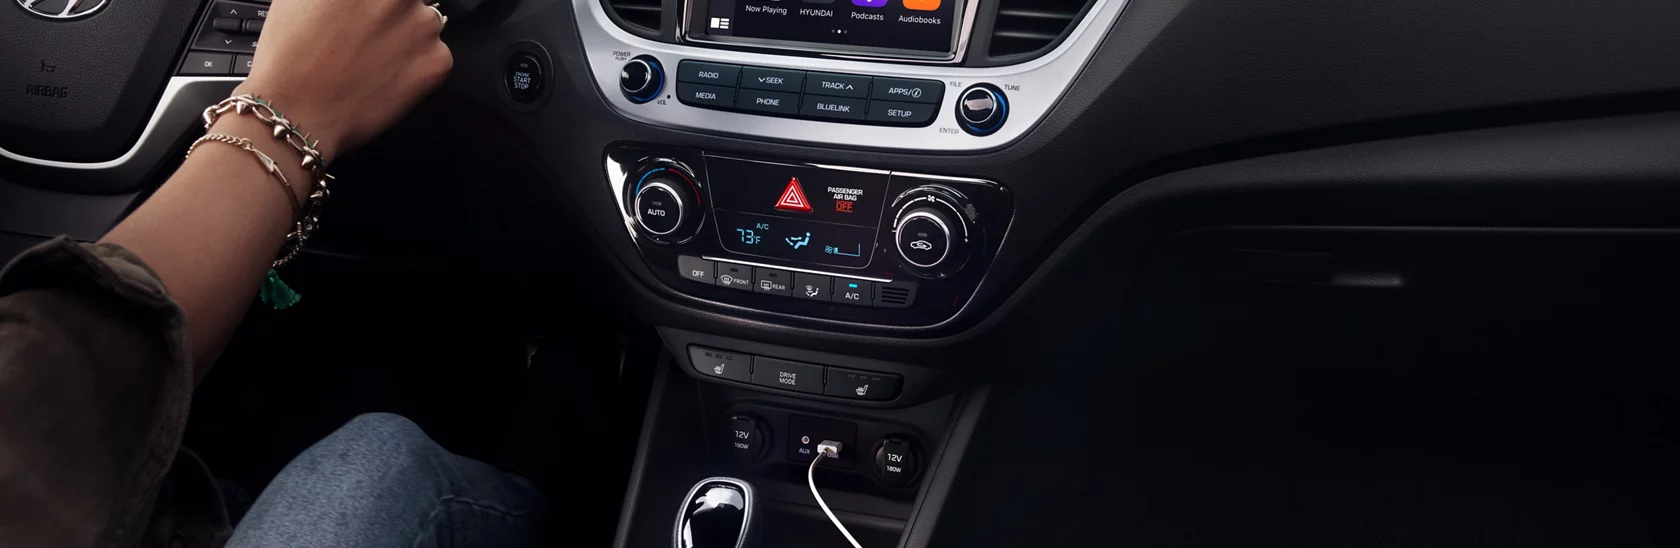 2021 現代汽車 Accent Apple CarPlay 與 Android Auto